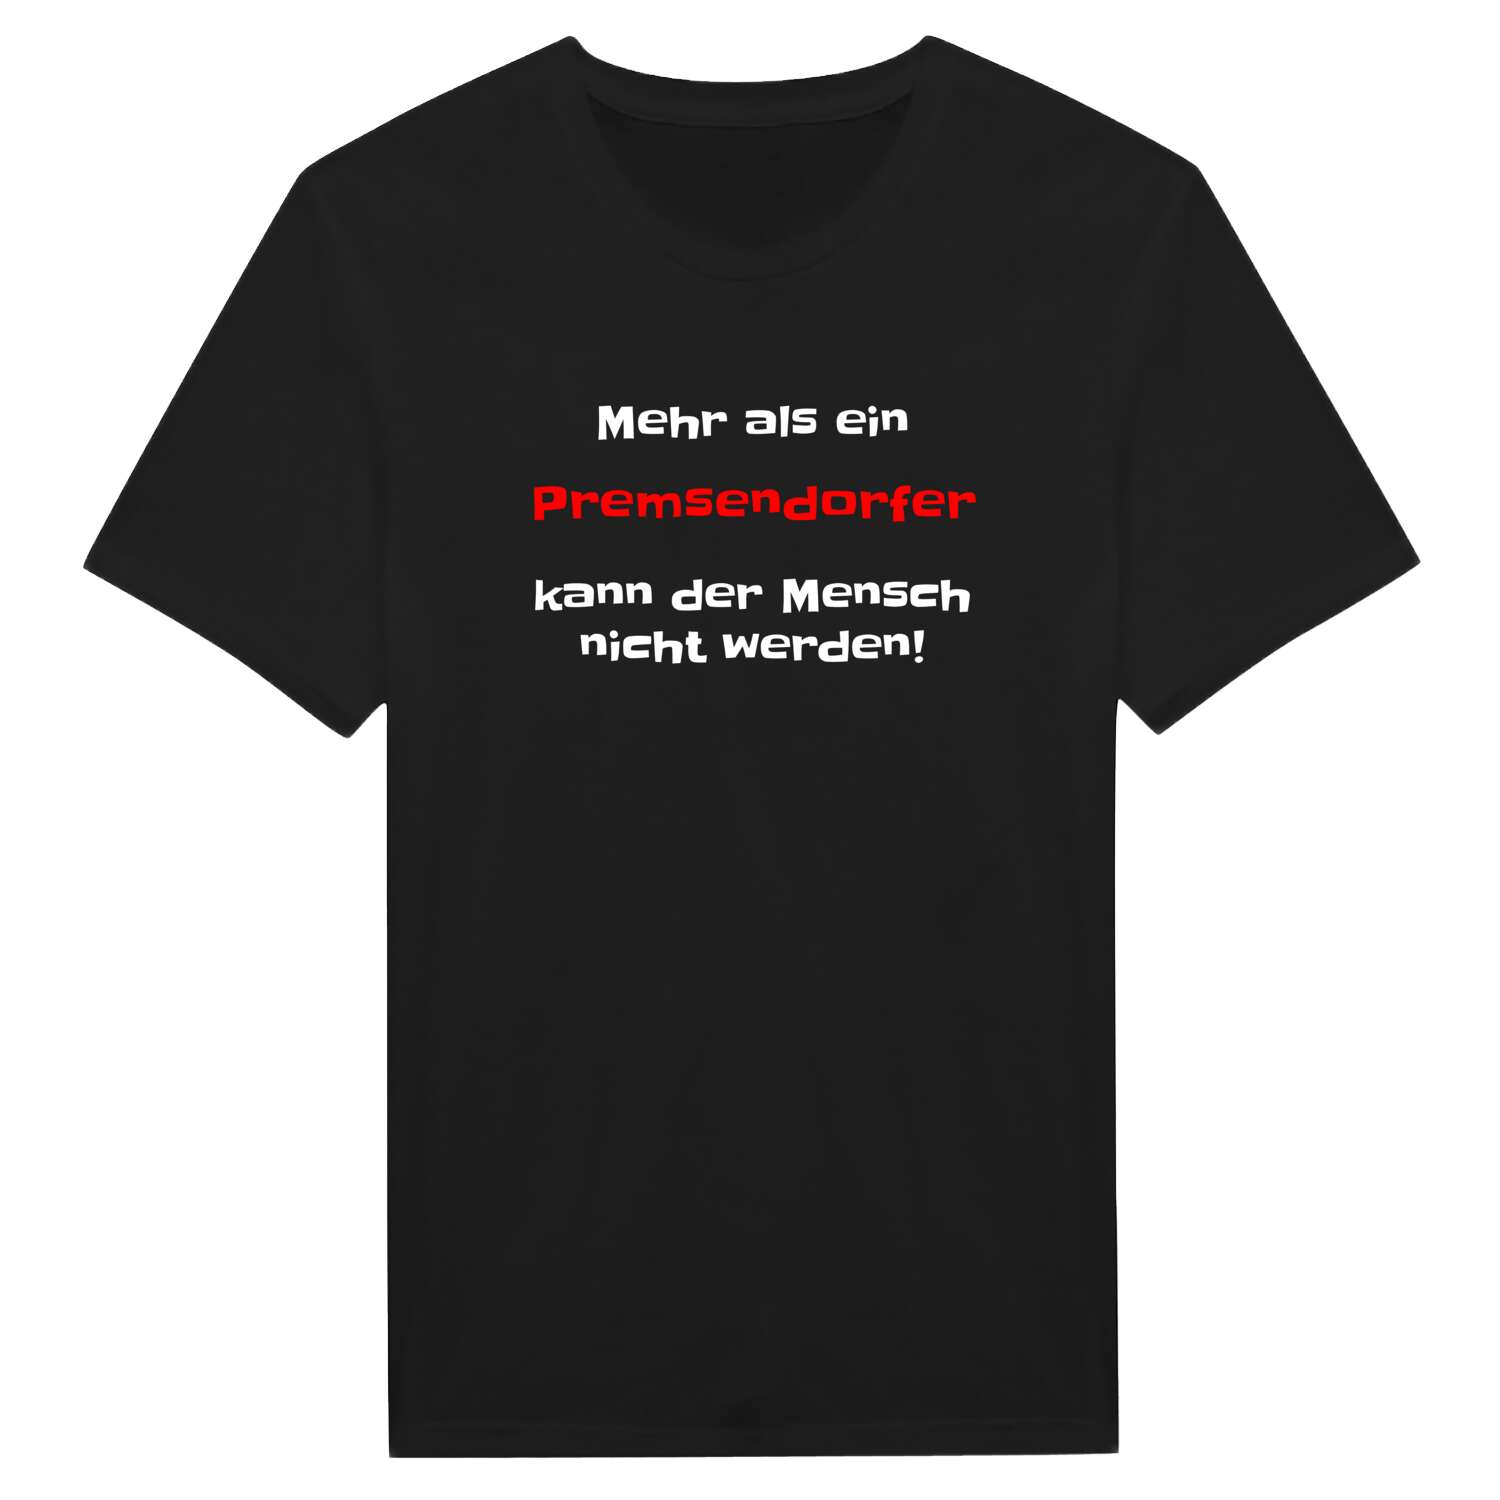 Premsendorf T-Shirt »Mehr als ein«